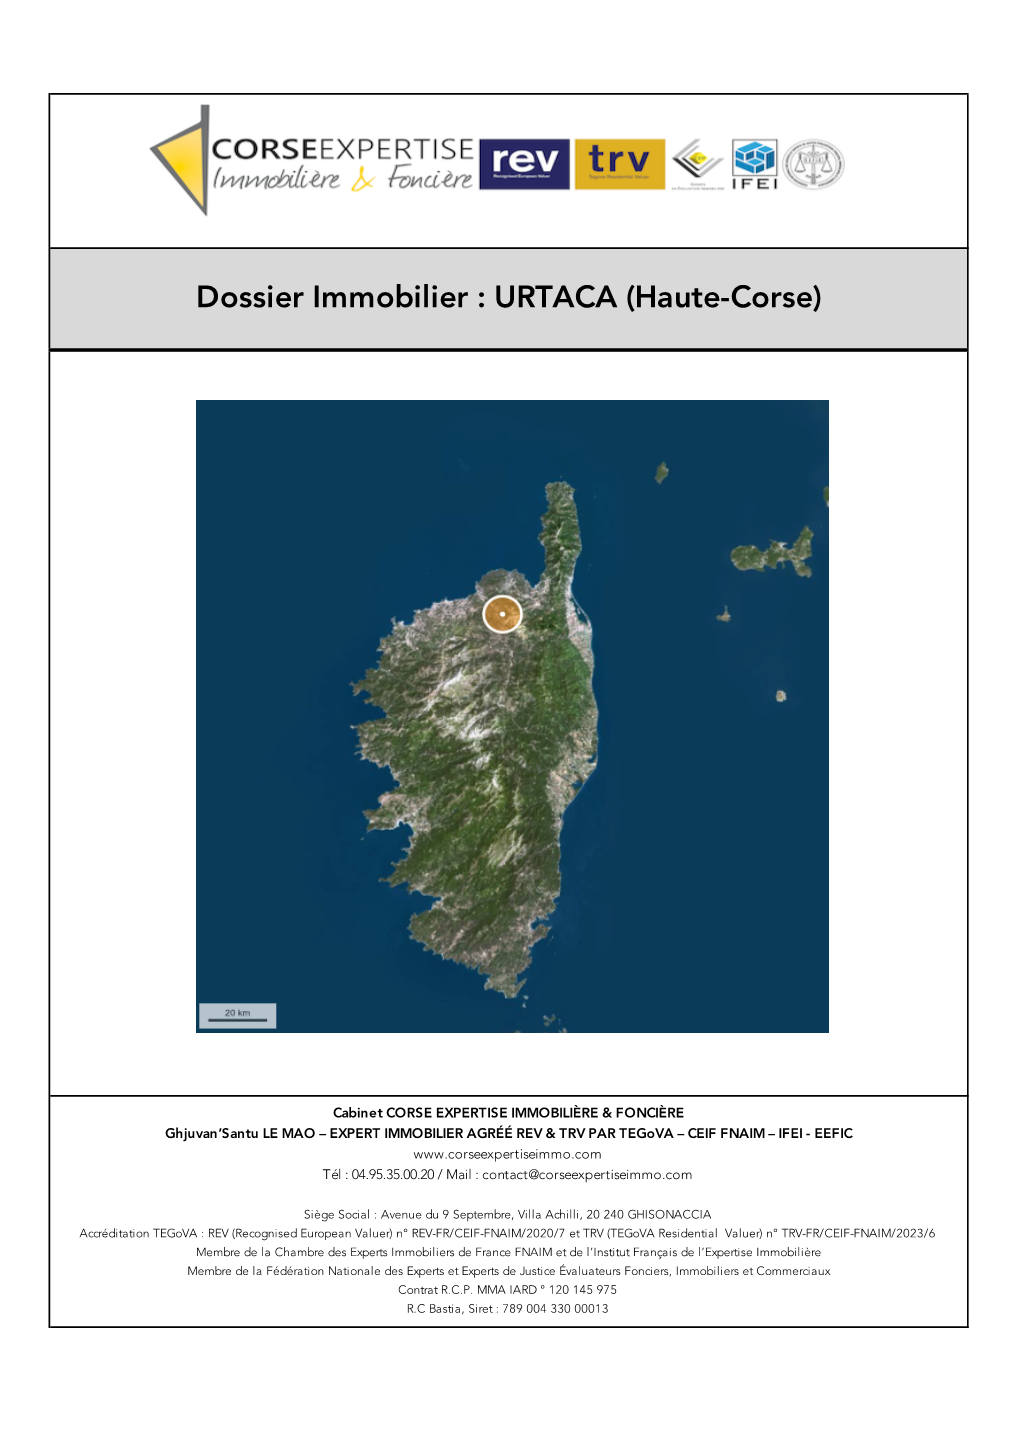 URTACA (Haute-Corse)